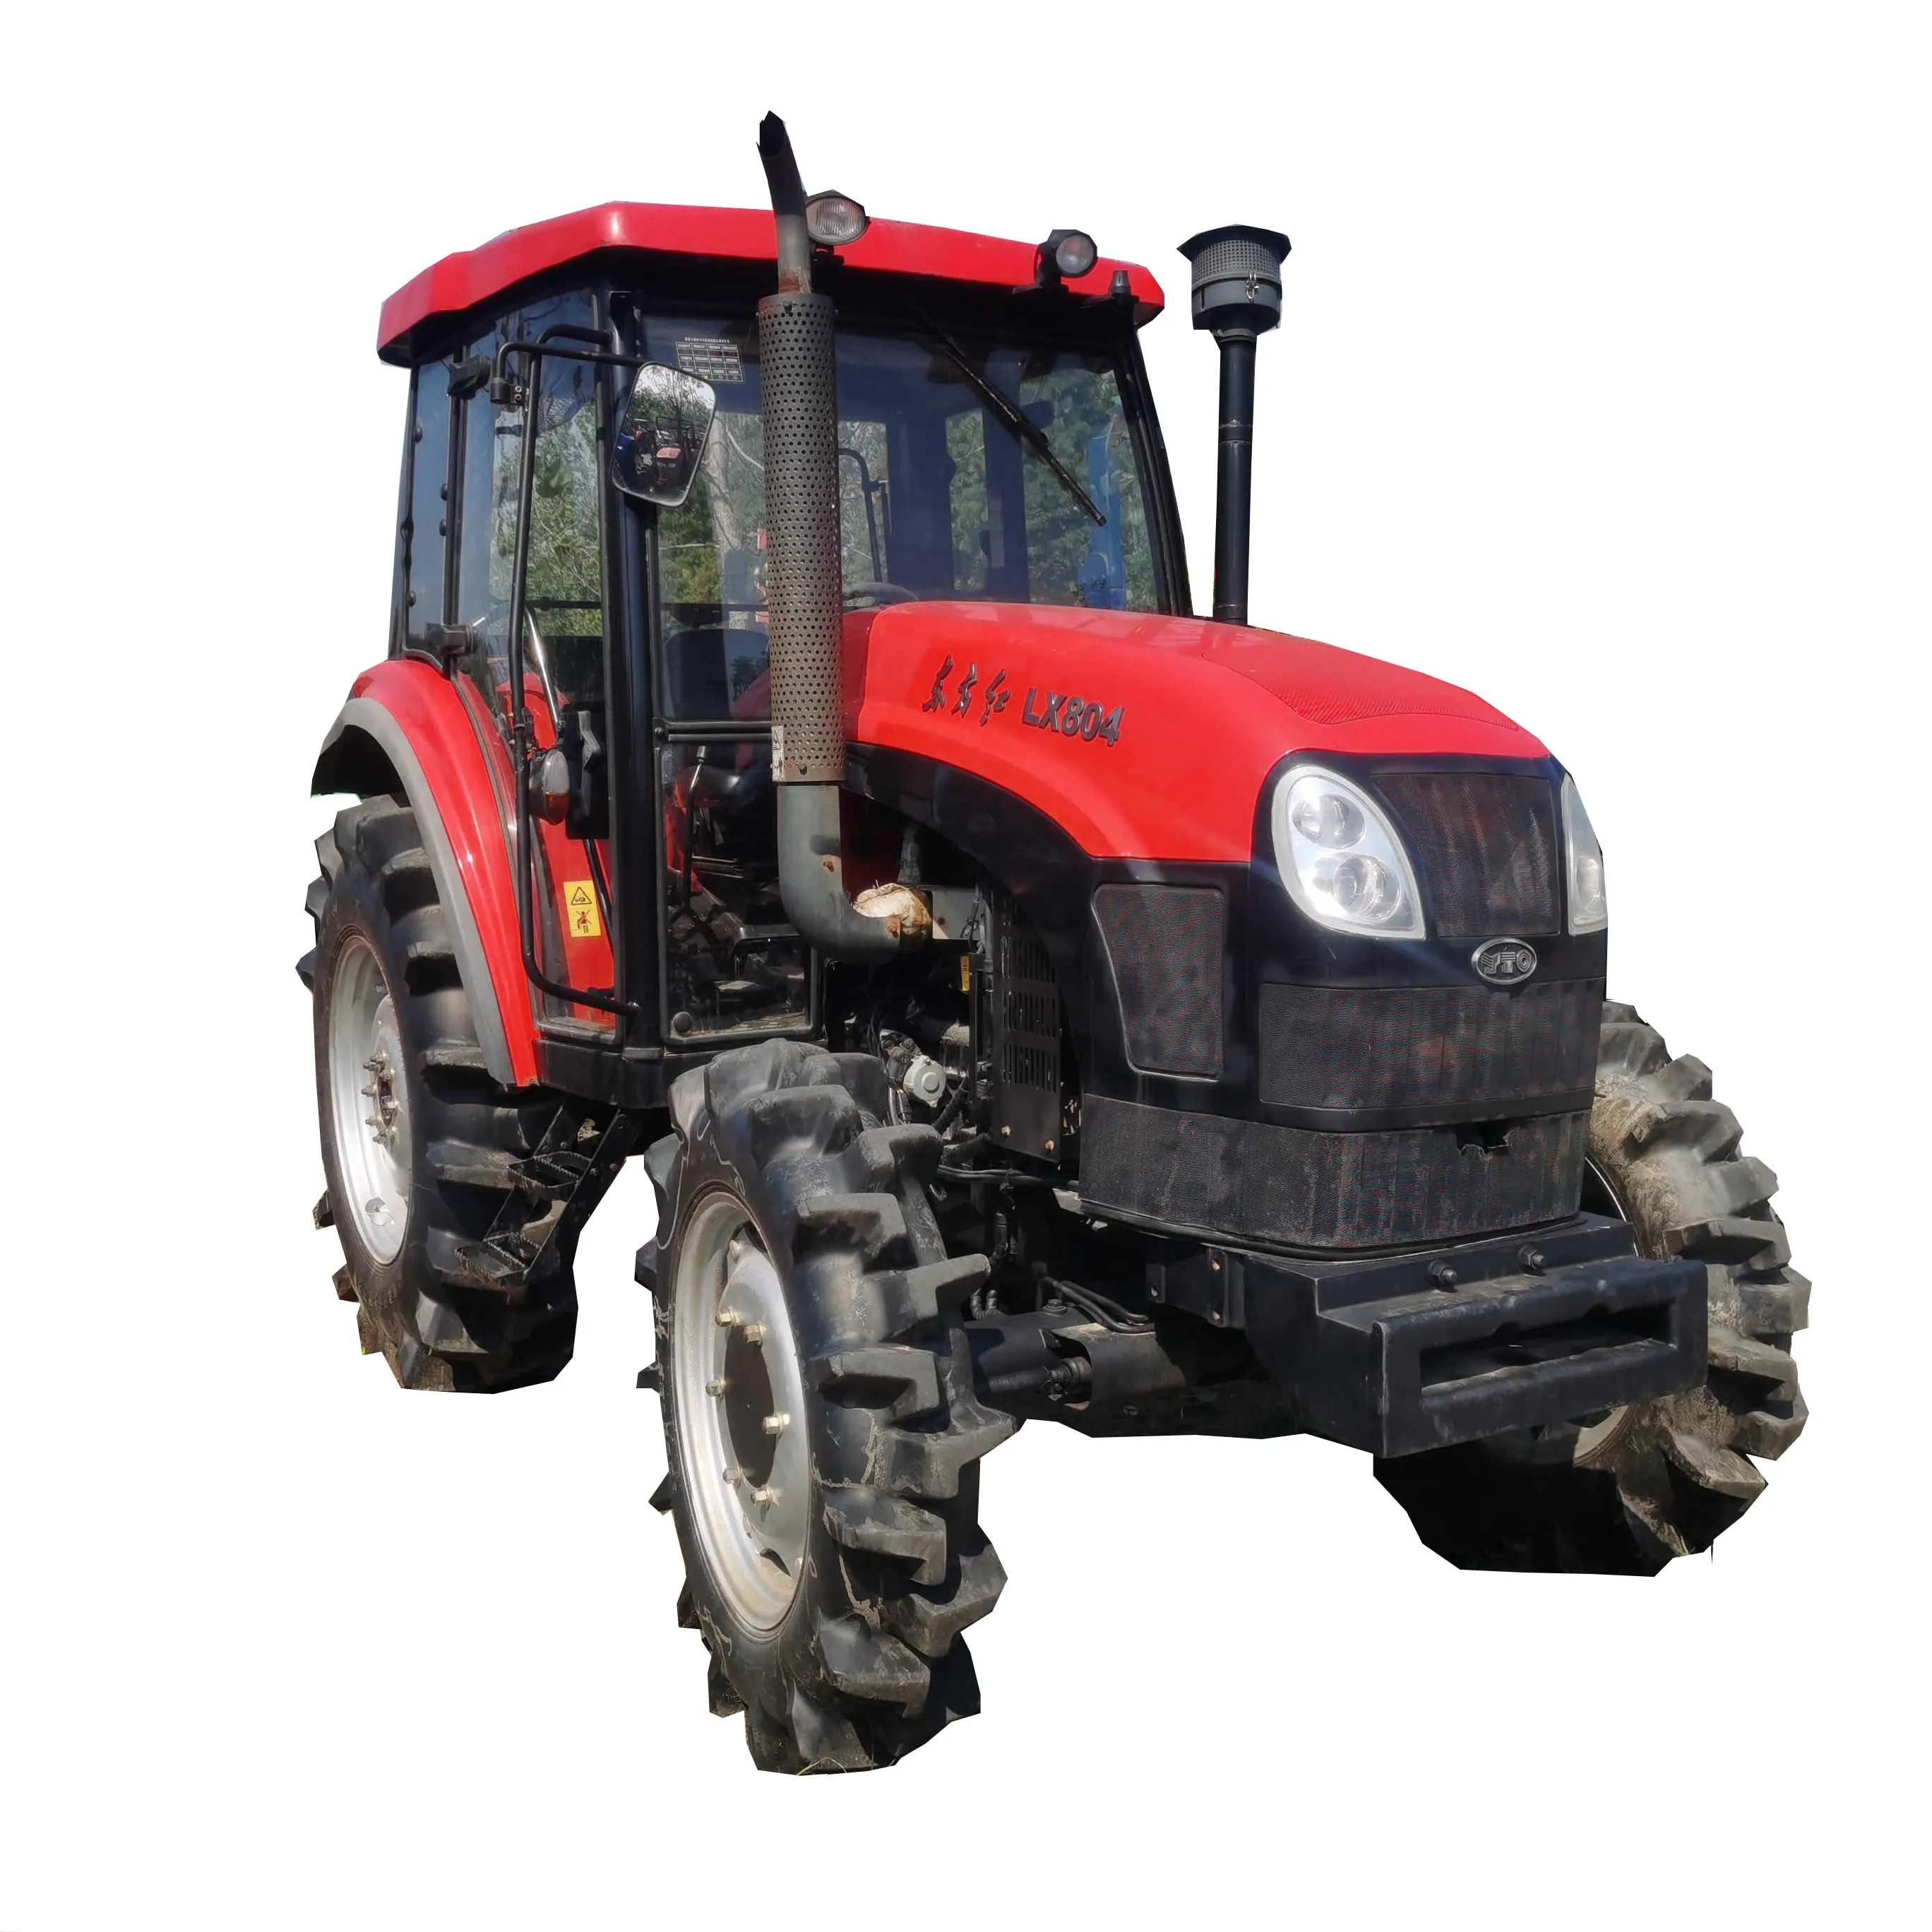 Б/у трактор YTO LX804 80hp, дешевые сельскохозяйственные КОЛЕСНЫЕ ТРАКТОРЫ 4x4wd, компактное сельскохозяйственное оборудование